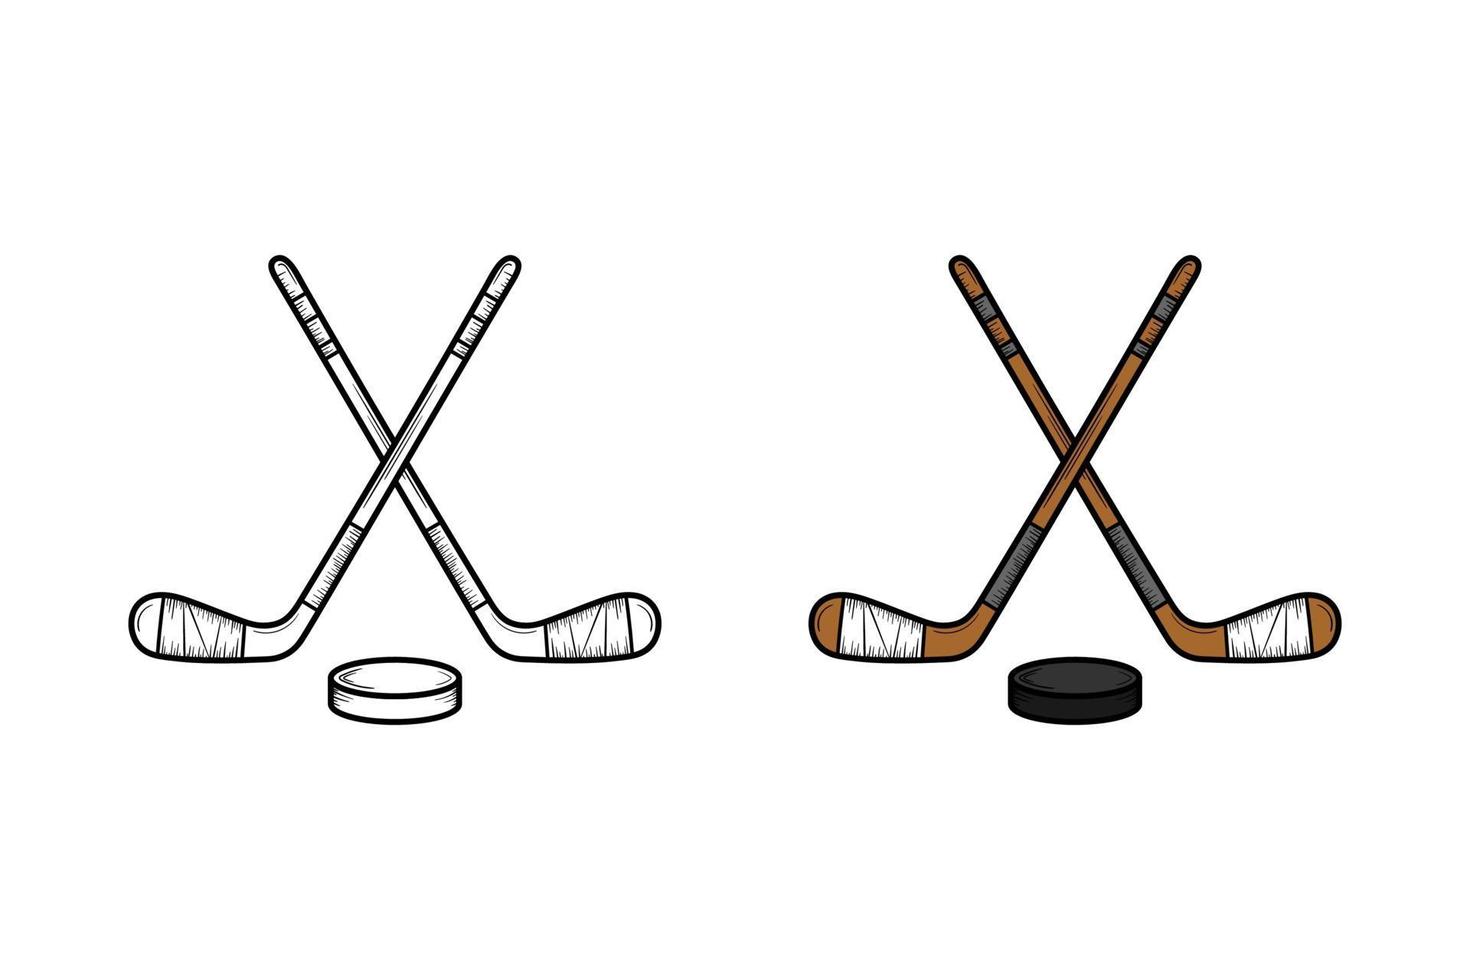 schizzo e colore dell'illustrazione disegnata a mano dell'hockey vettore